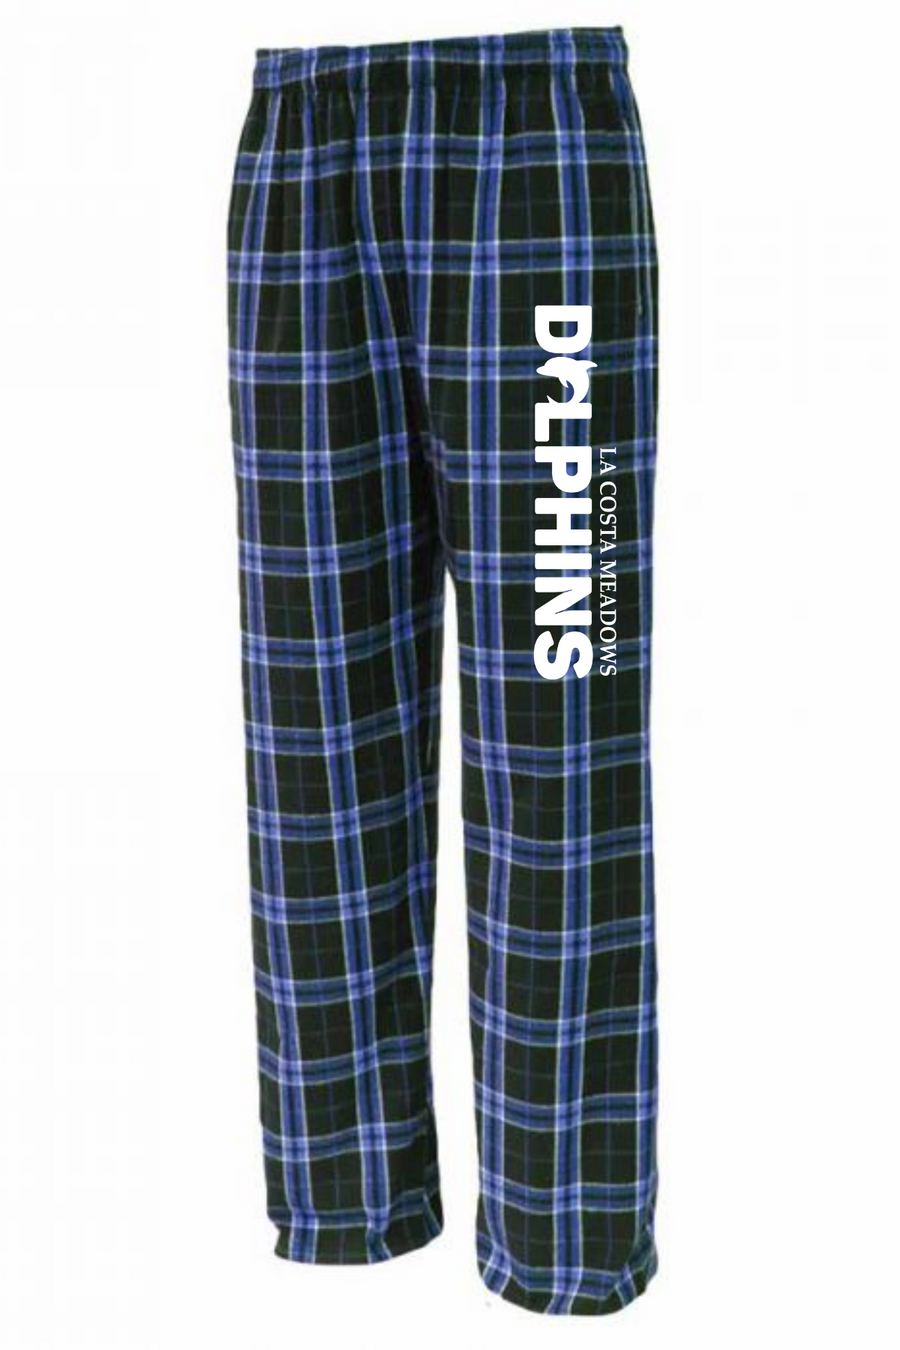 La Costa Meadows Spirit Wear 2023-24 On-Demand-Flannel Pants